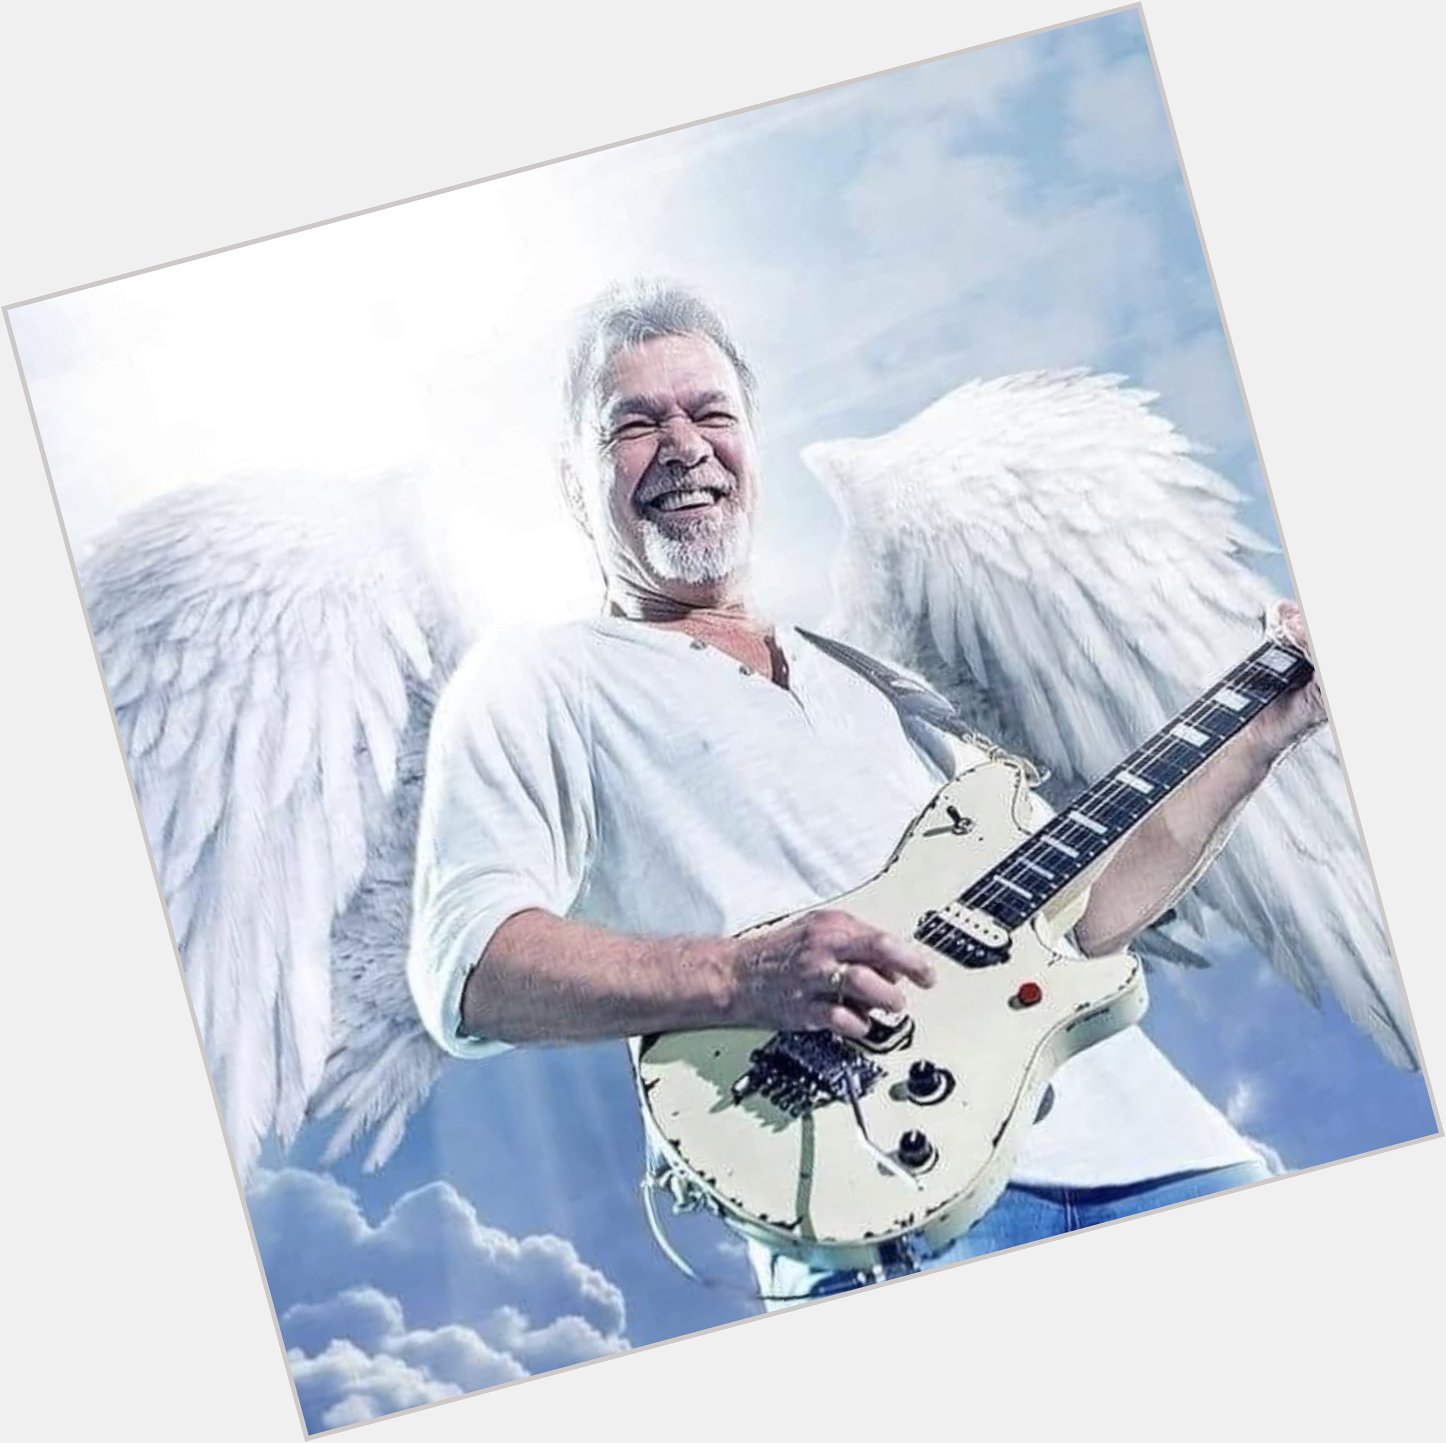 Happy Birthday to the late great Eddie Van Halen. RIP Legend 